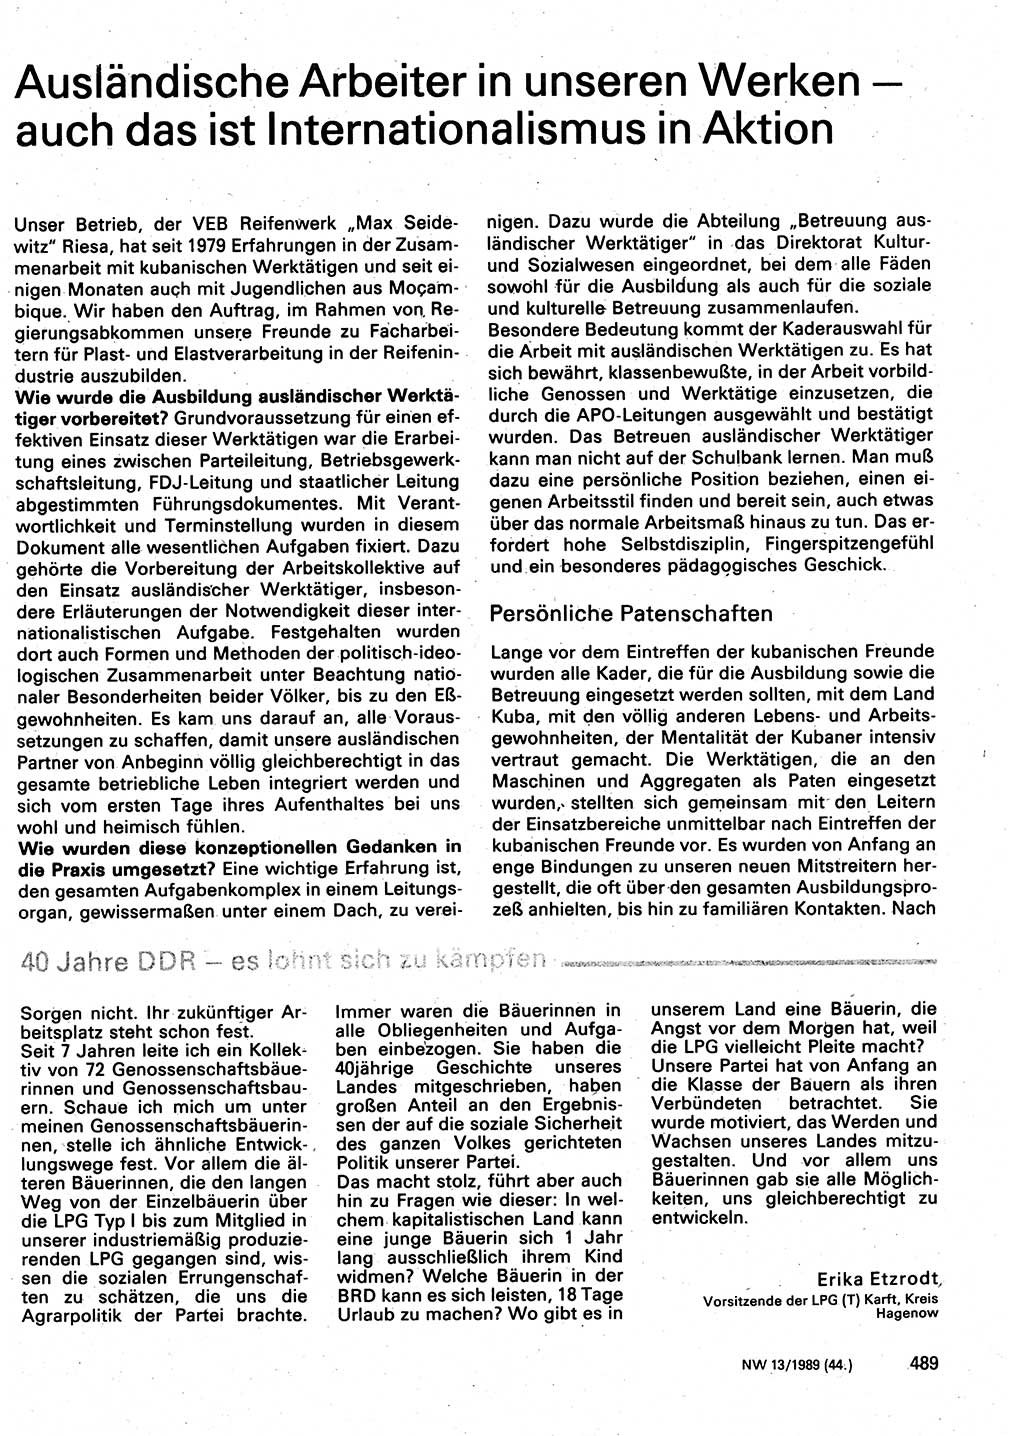 Neuer Weg (NW), Organ des Zentralkomitees (ZK) der SED (Sozialistische Einheitspartei Deutschlands) für Fragen des Parteilebens, 44. Jahrgang [Deutsche Demokratische Republik (DDR)] 1989, Seite 489 (NW ZK SED DDR 1989, S. 489)